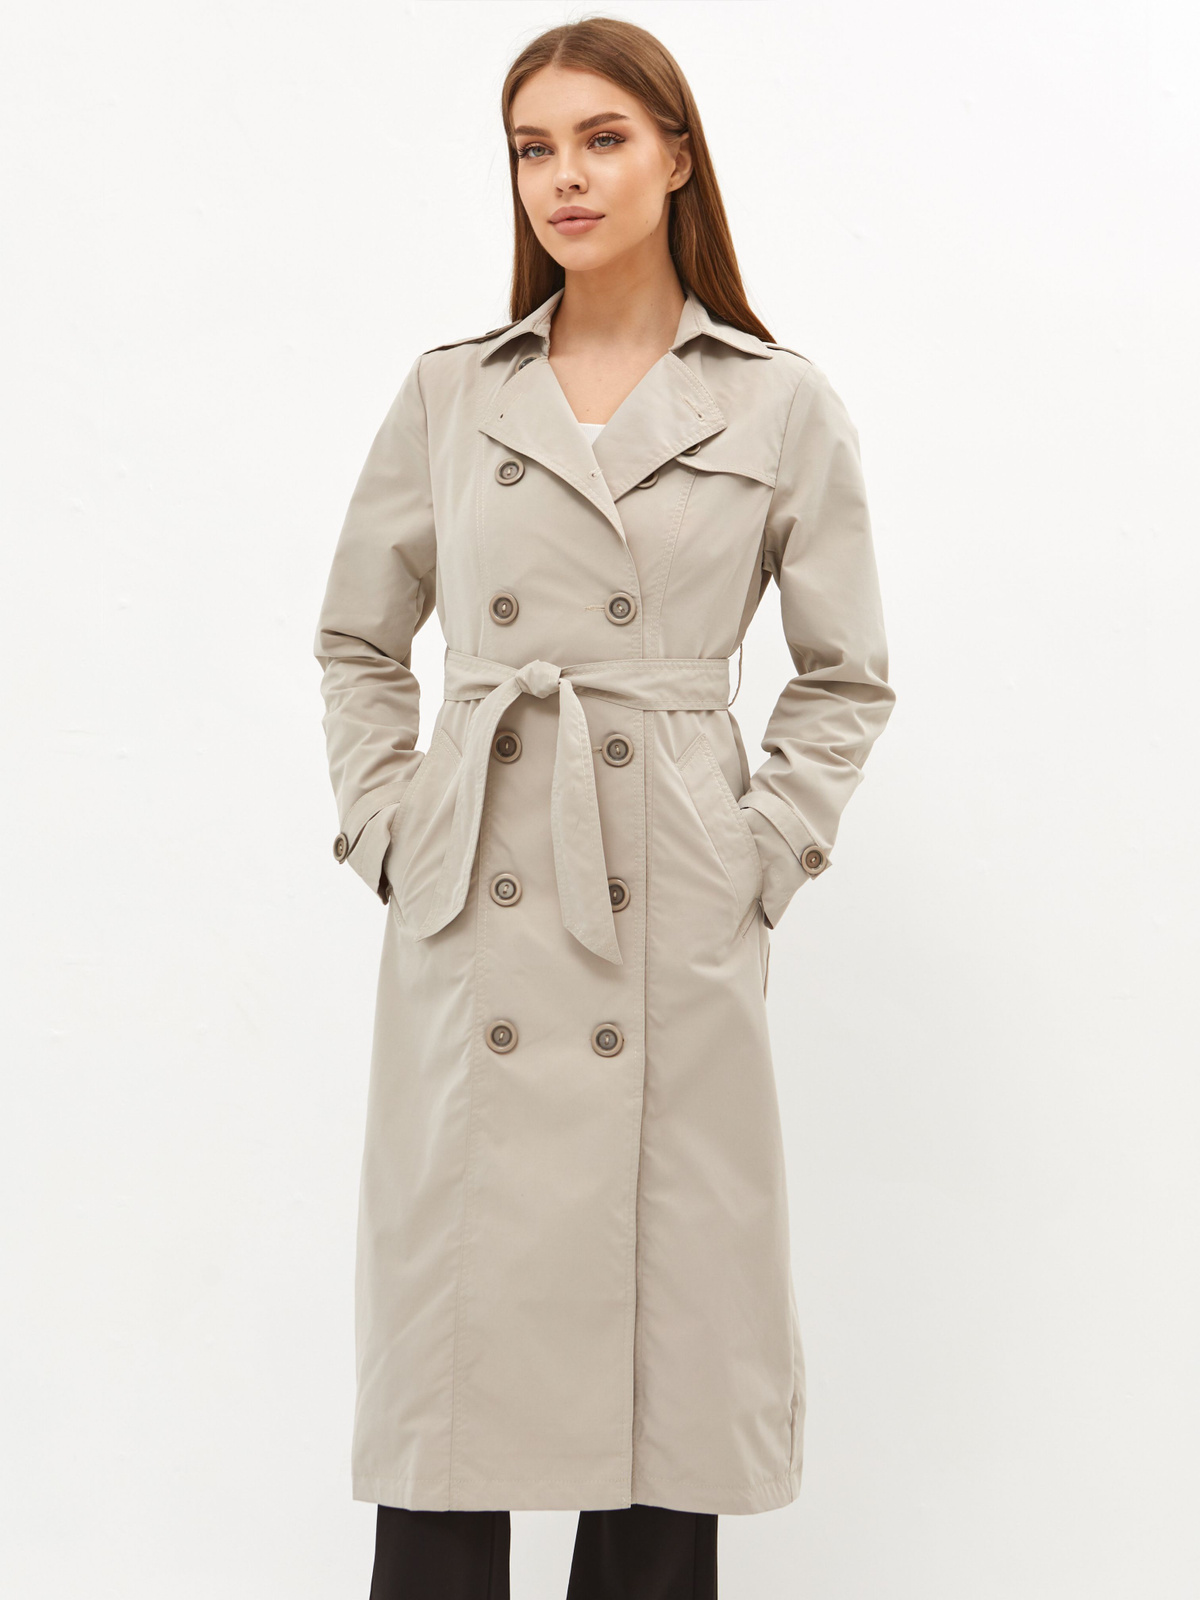 Универсальная женская куртка для любого роста! Например для высоких ПАРАМЕТРЫ МОДЕЛИ НА ФОТО: рост 177 89-60-95 размер куртки на модели 42